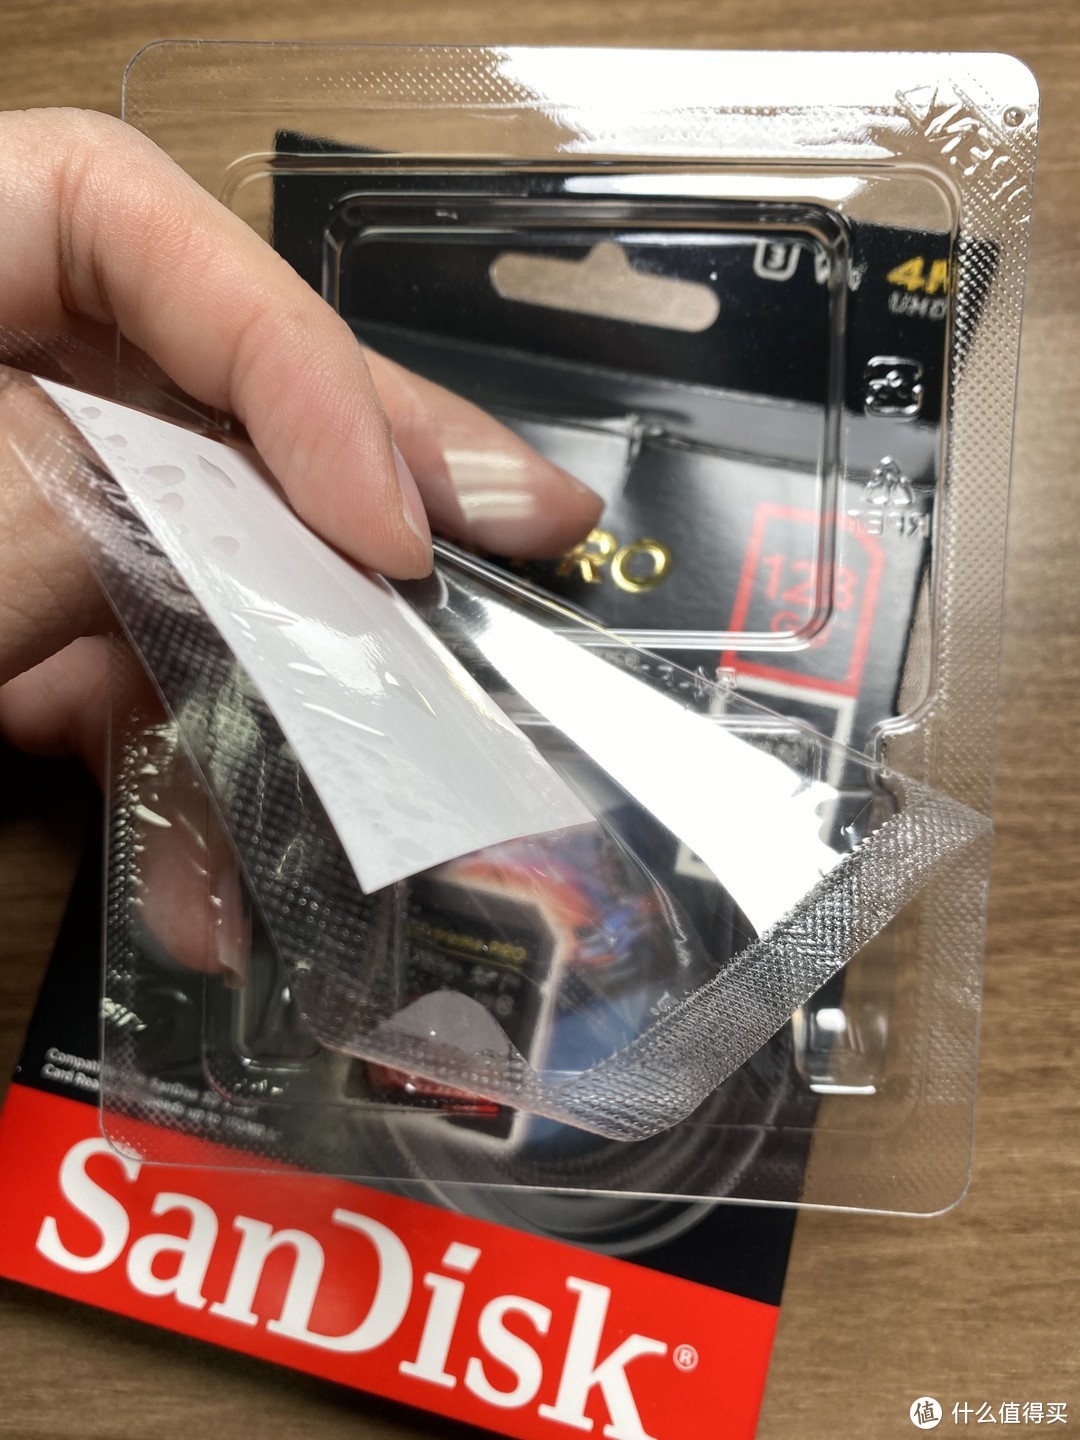 闪迪 SanDisk 128G  U3 至尊超极速版 Extreme Pro SD存储卡开箱评测